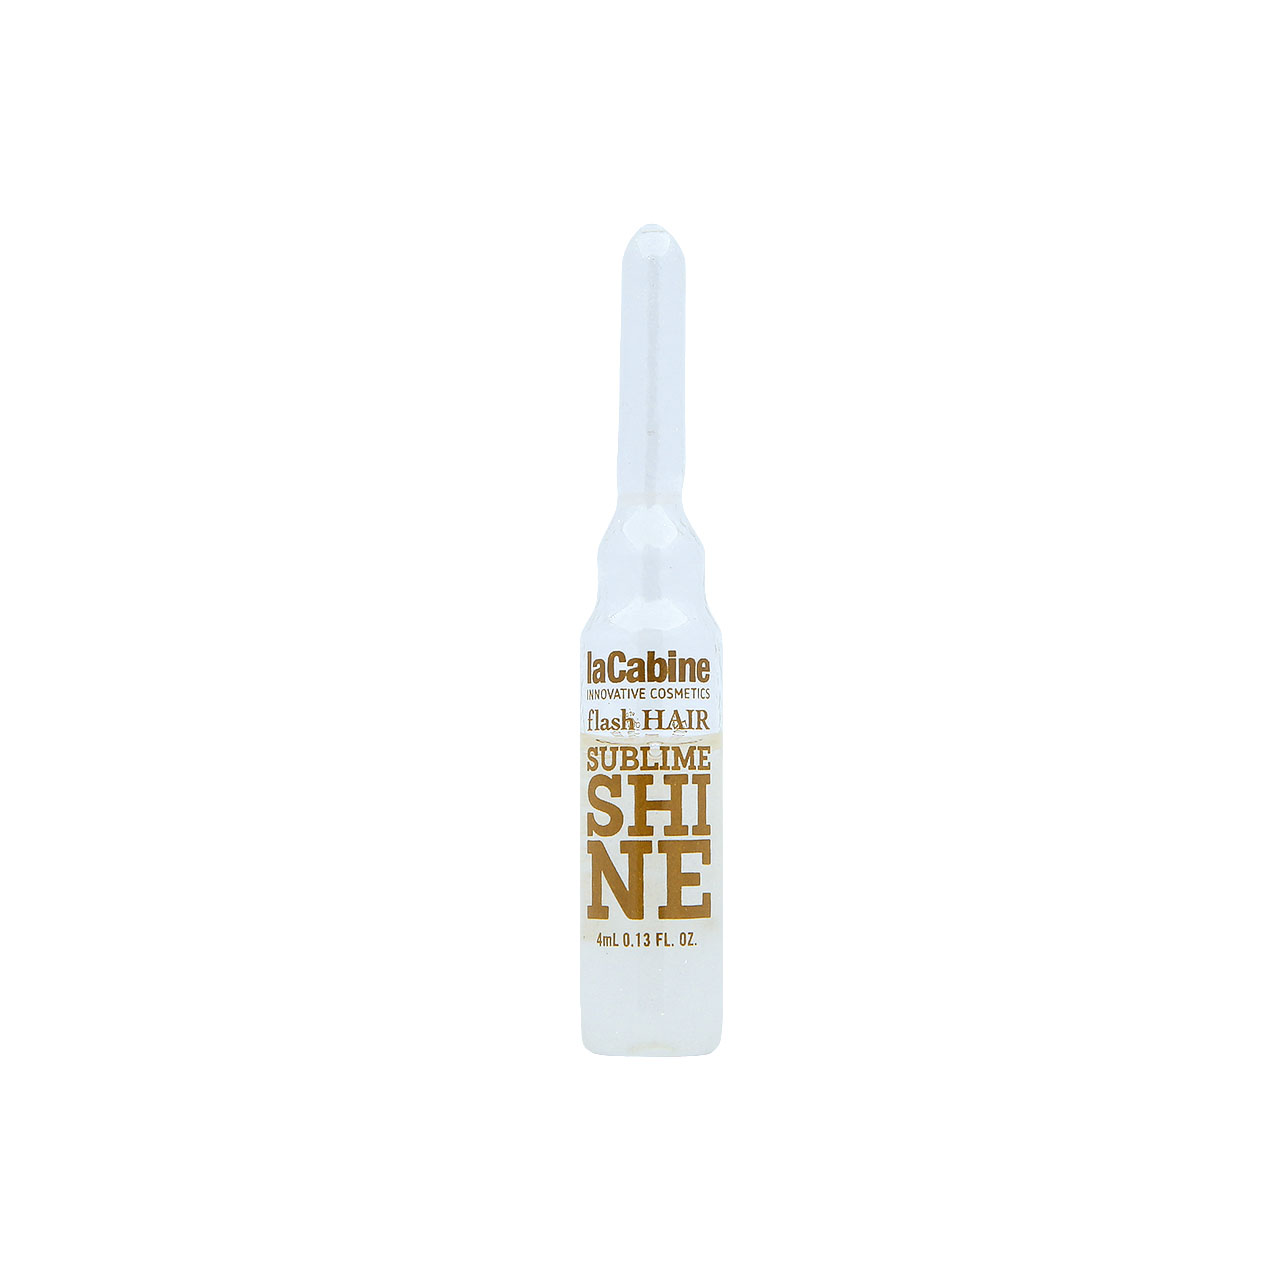 La Cabine Sublime Shine Hair Ampoules 4ml x 7pcs | Sasa Global eShop